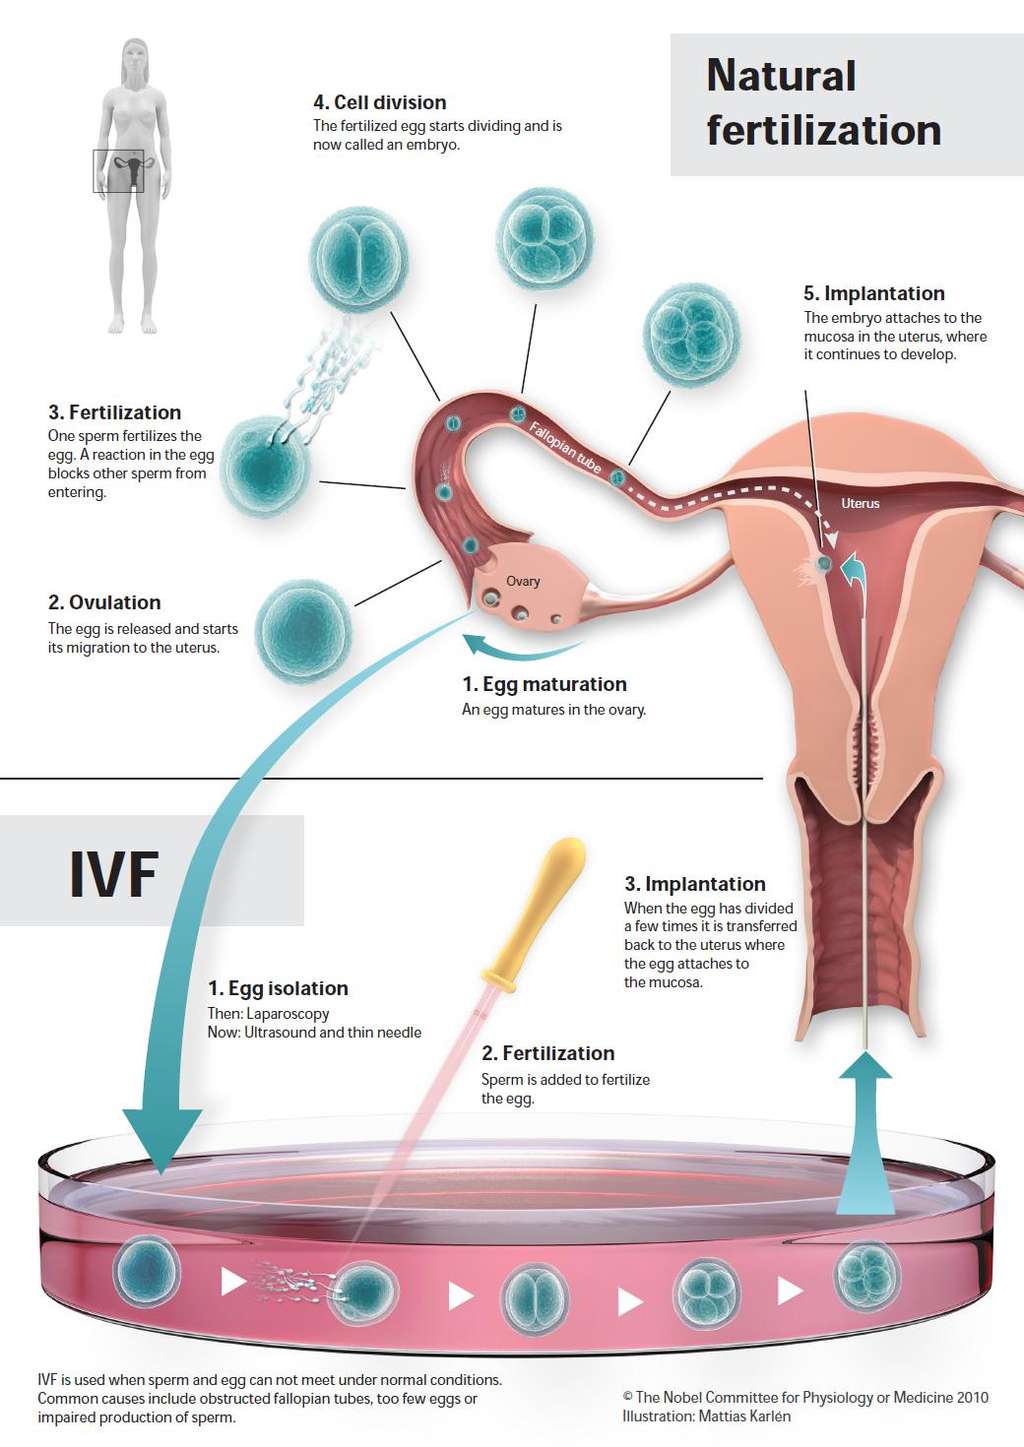 La voie de fécondation naturelle (partie du haut) comprend la maturation de l'ovocyte dans l'ovaire (1), l'ovulation (2), la fécondation par les spermatozoïdes dans la trompe de Fallope (3), la division cellulaire (4) et l'implantation de l'embryon dans l'utérus. La fécondation <em>in vitro</em> (partie du bas) consiste en la récupération de l'ovocyte maturé (1), la fécondation par les spermatozoïdes et finalement la réimplantation dans l'utérus de l'embryon (3) qui a commencé à se diviser. © <em>The Nobel Committee for Physiology or Medicine 2010</em> / Illustration : Mattias Karlén